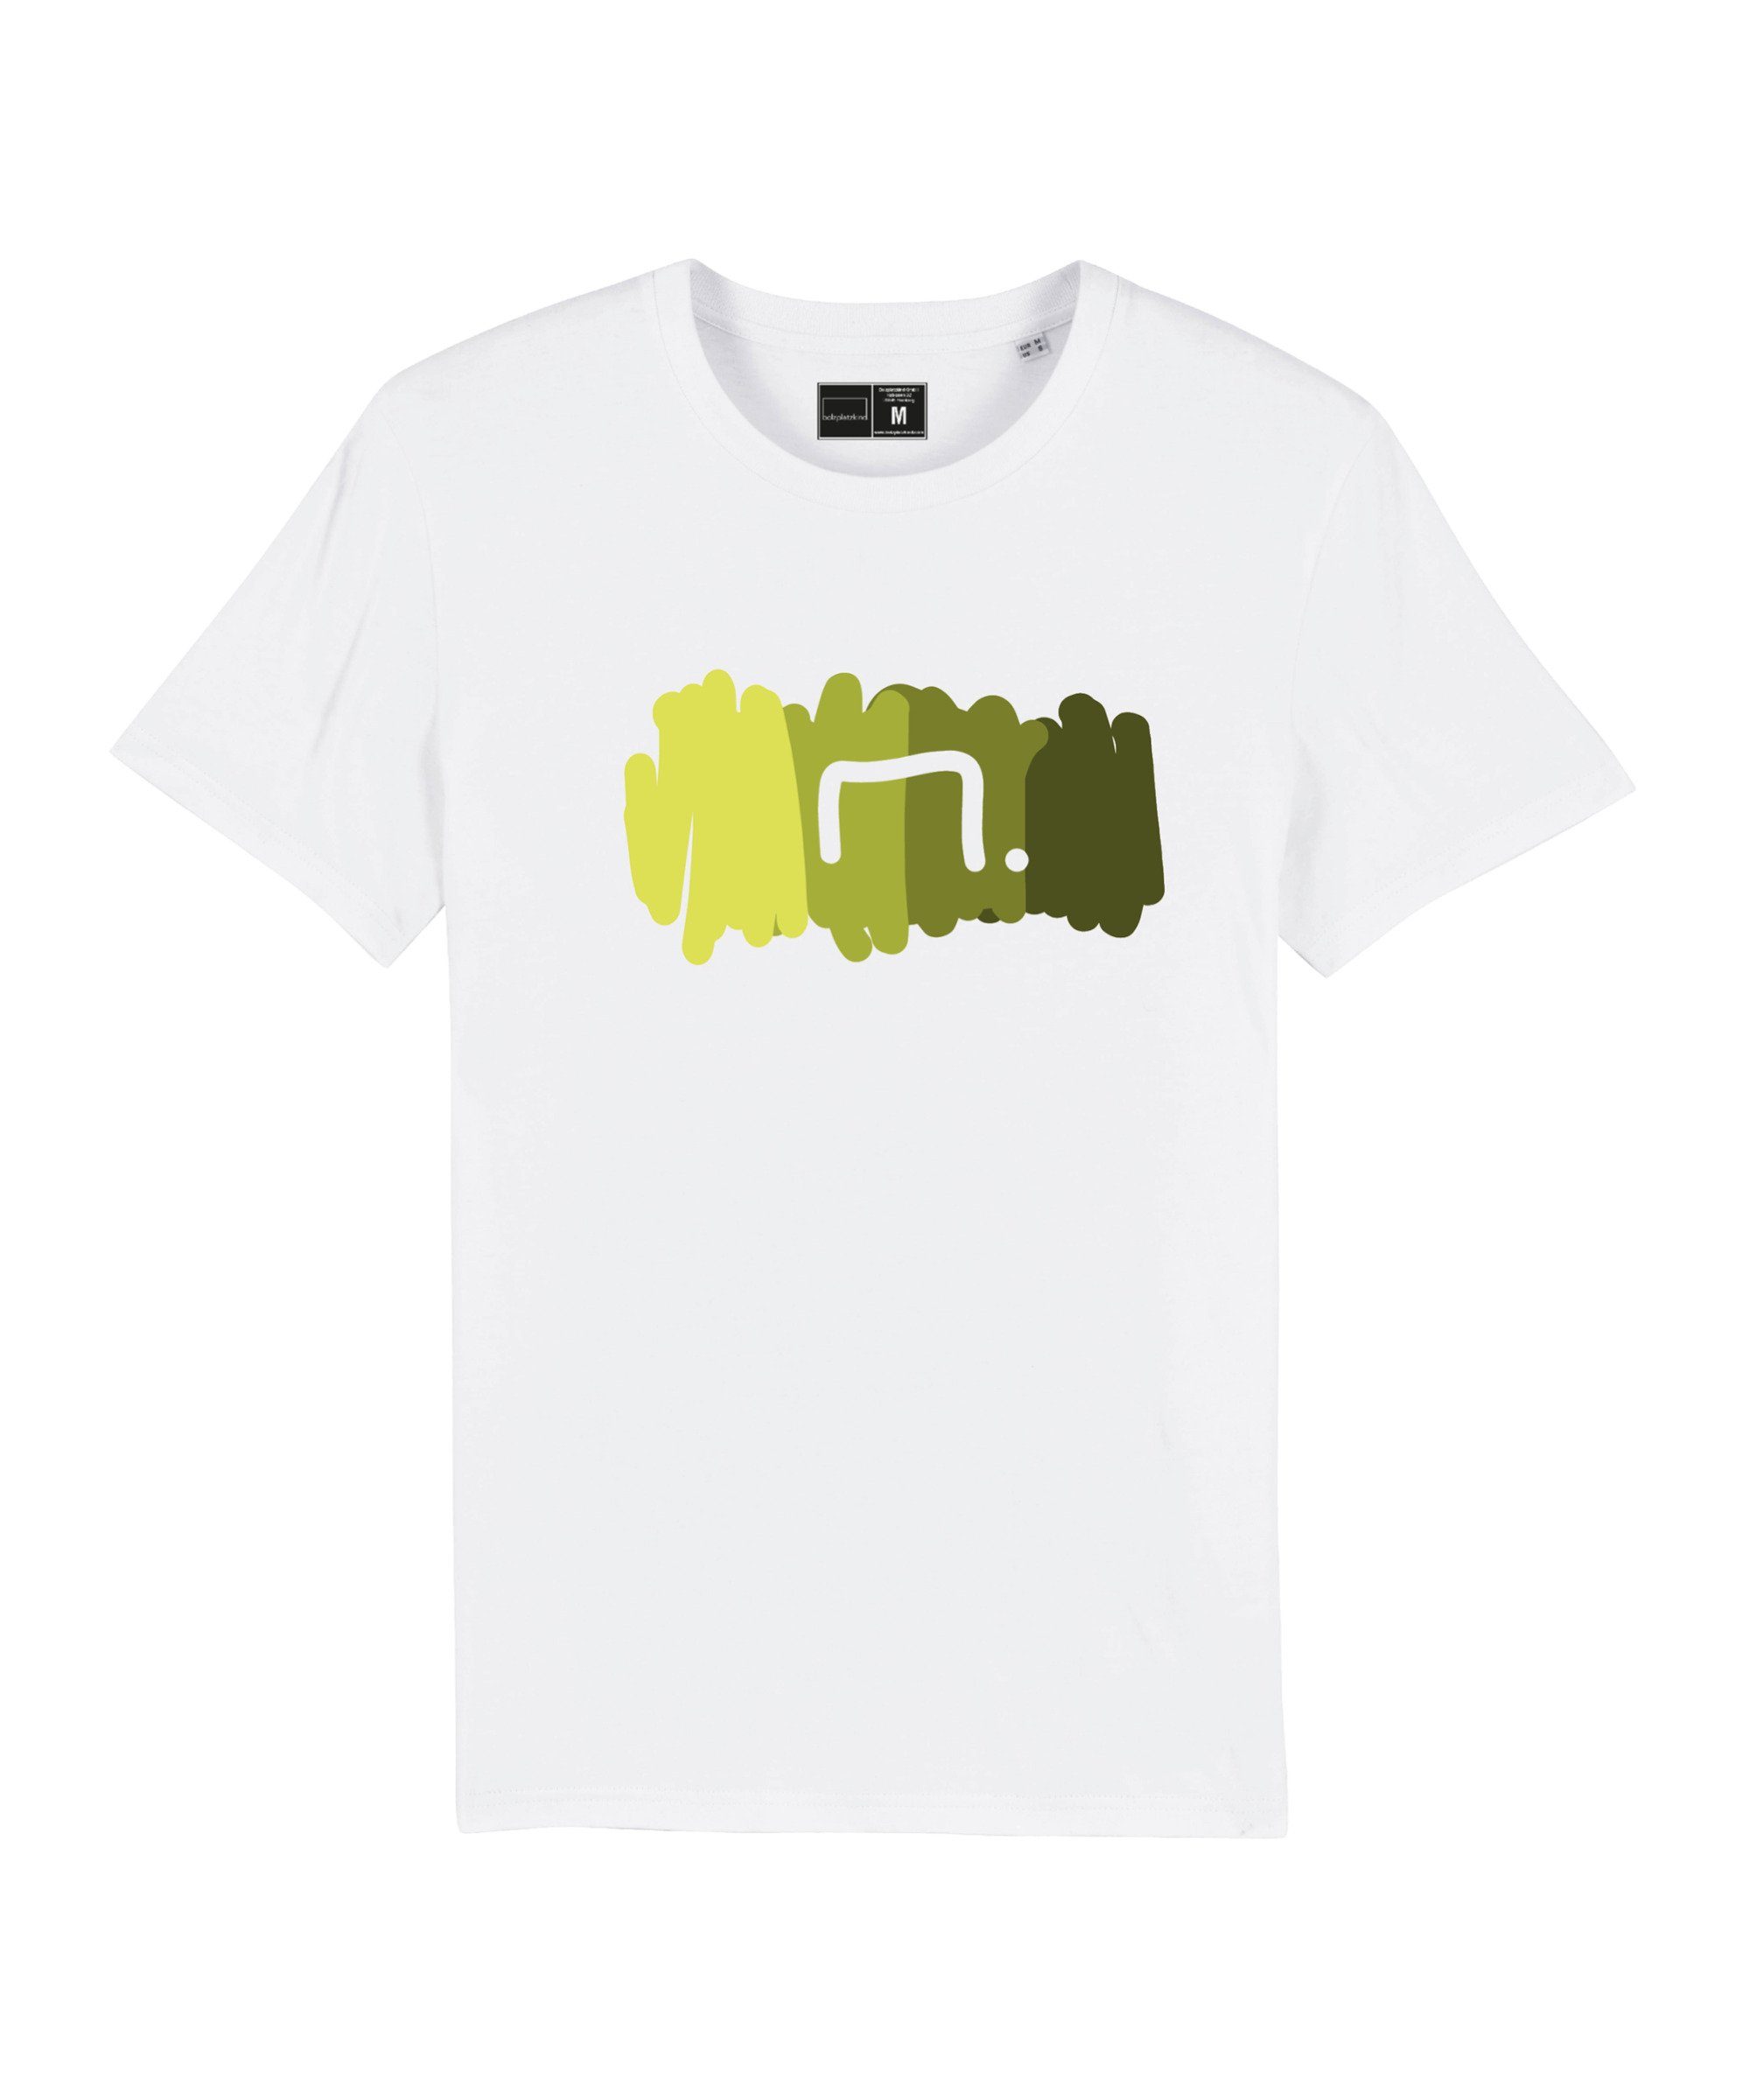 Bolzplatzkind T-Shirt "Free" T-Shirt Nachhaltiges Produkt weissgruen